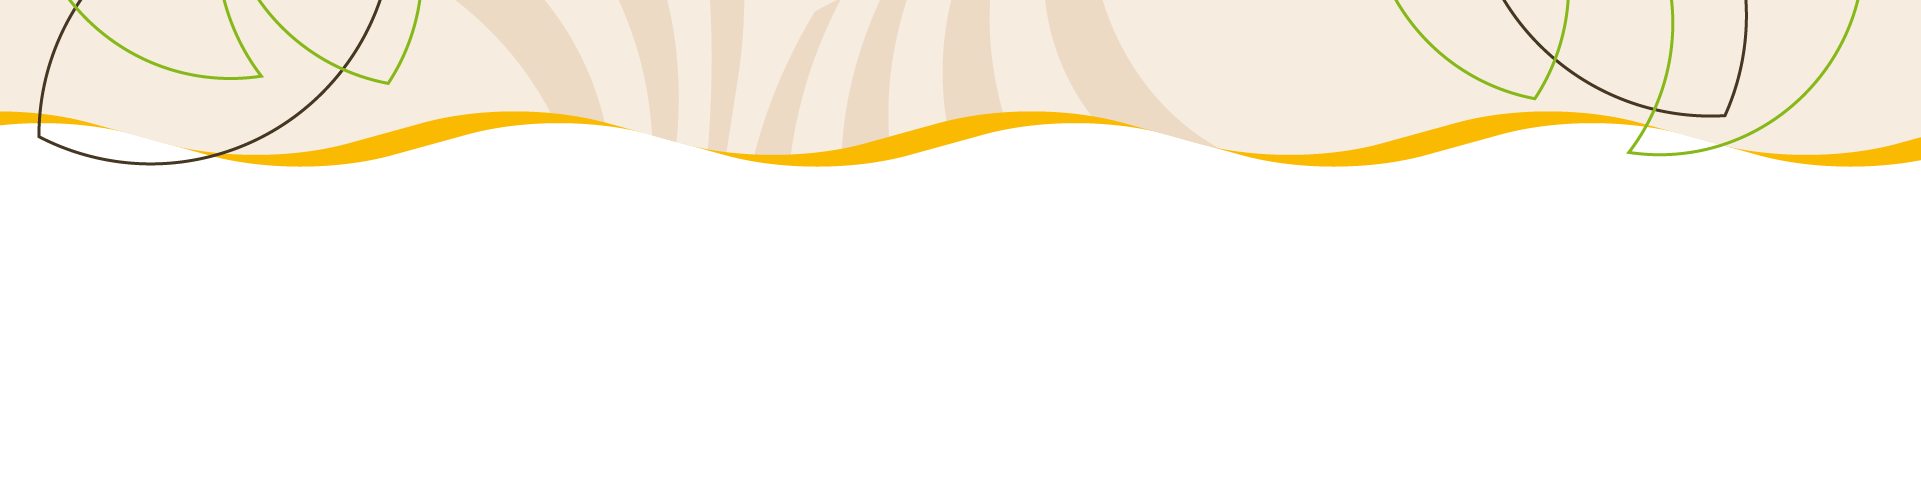 bannière design dans les tons de beige, vert et marron